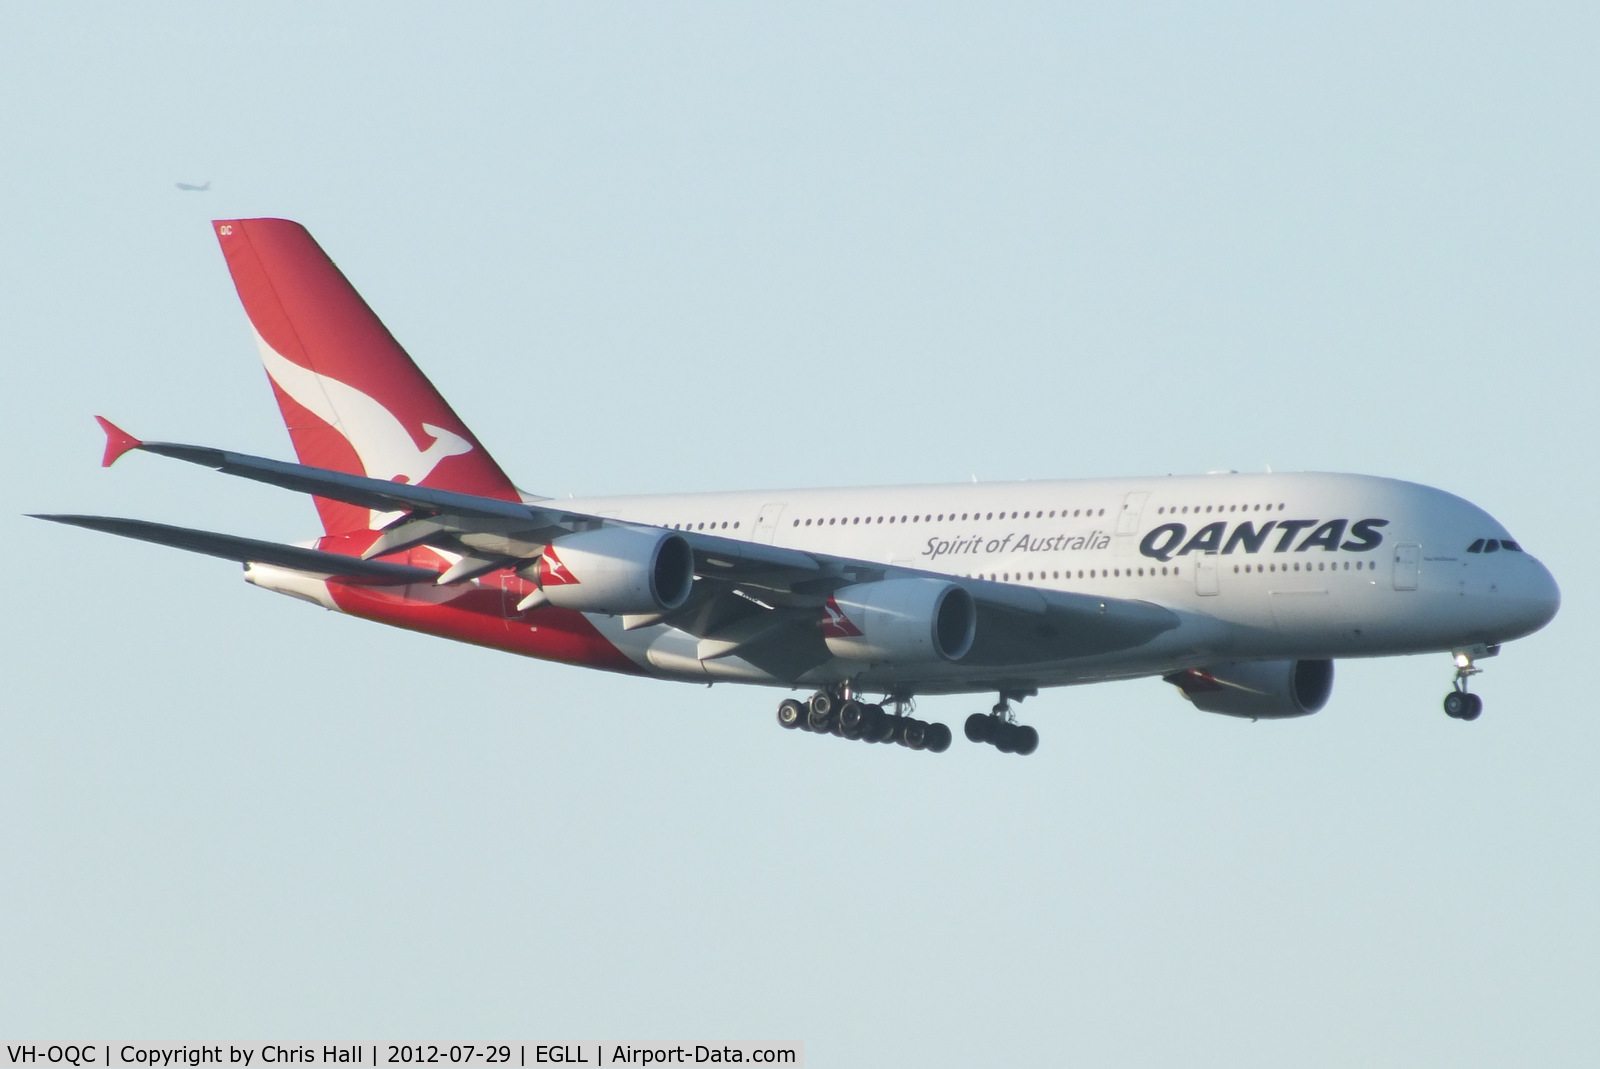 VH-OQC, 2008 Airbus A380-842 C/N 022, Qantas